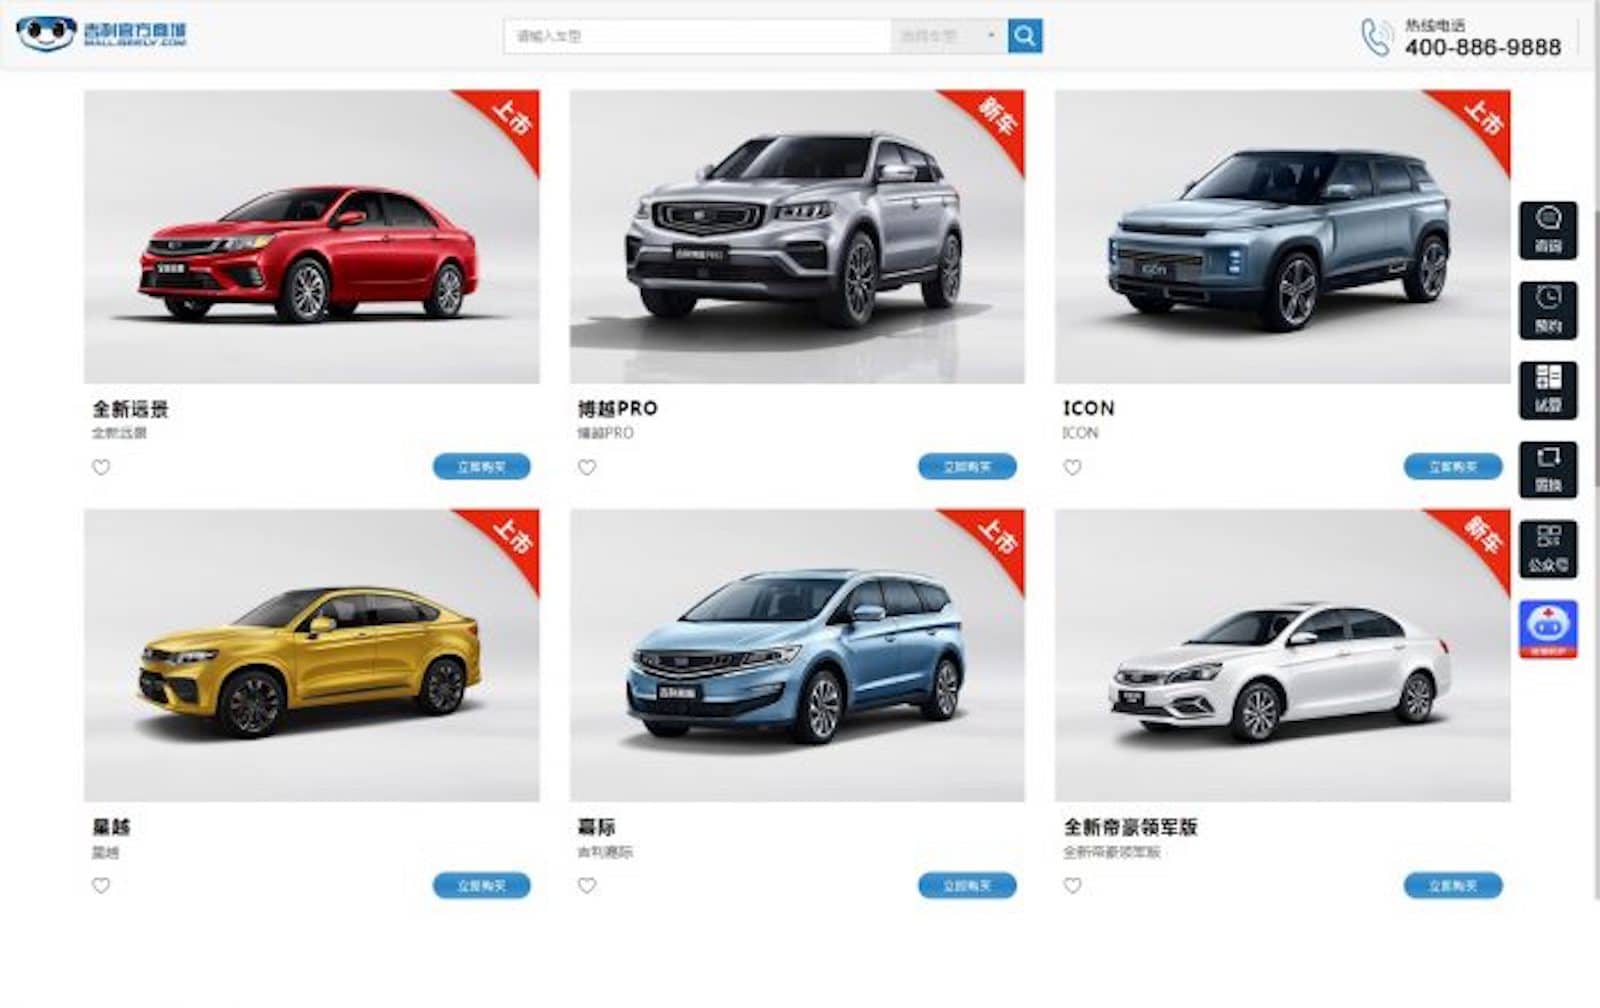 Coronavirus Crushing China Car Sales in February ...